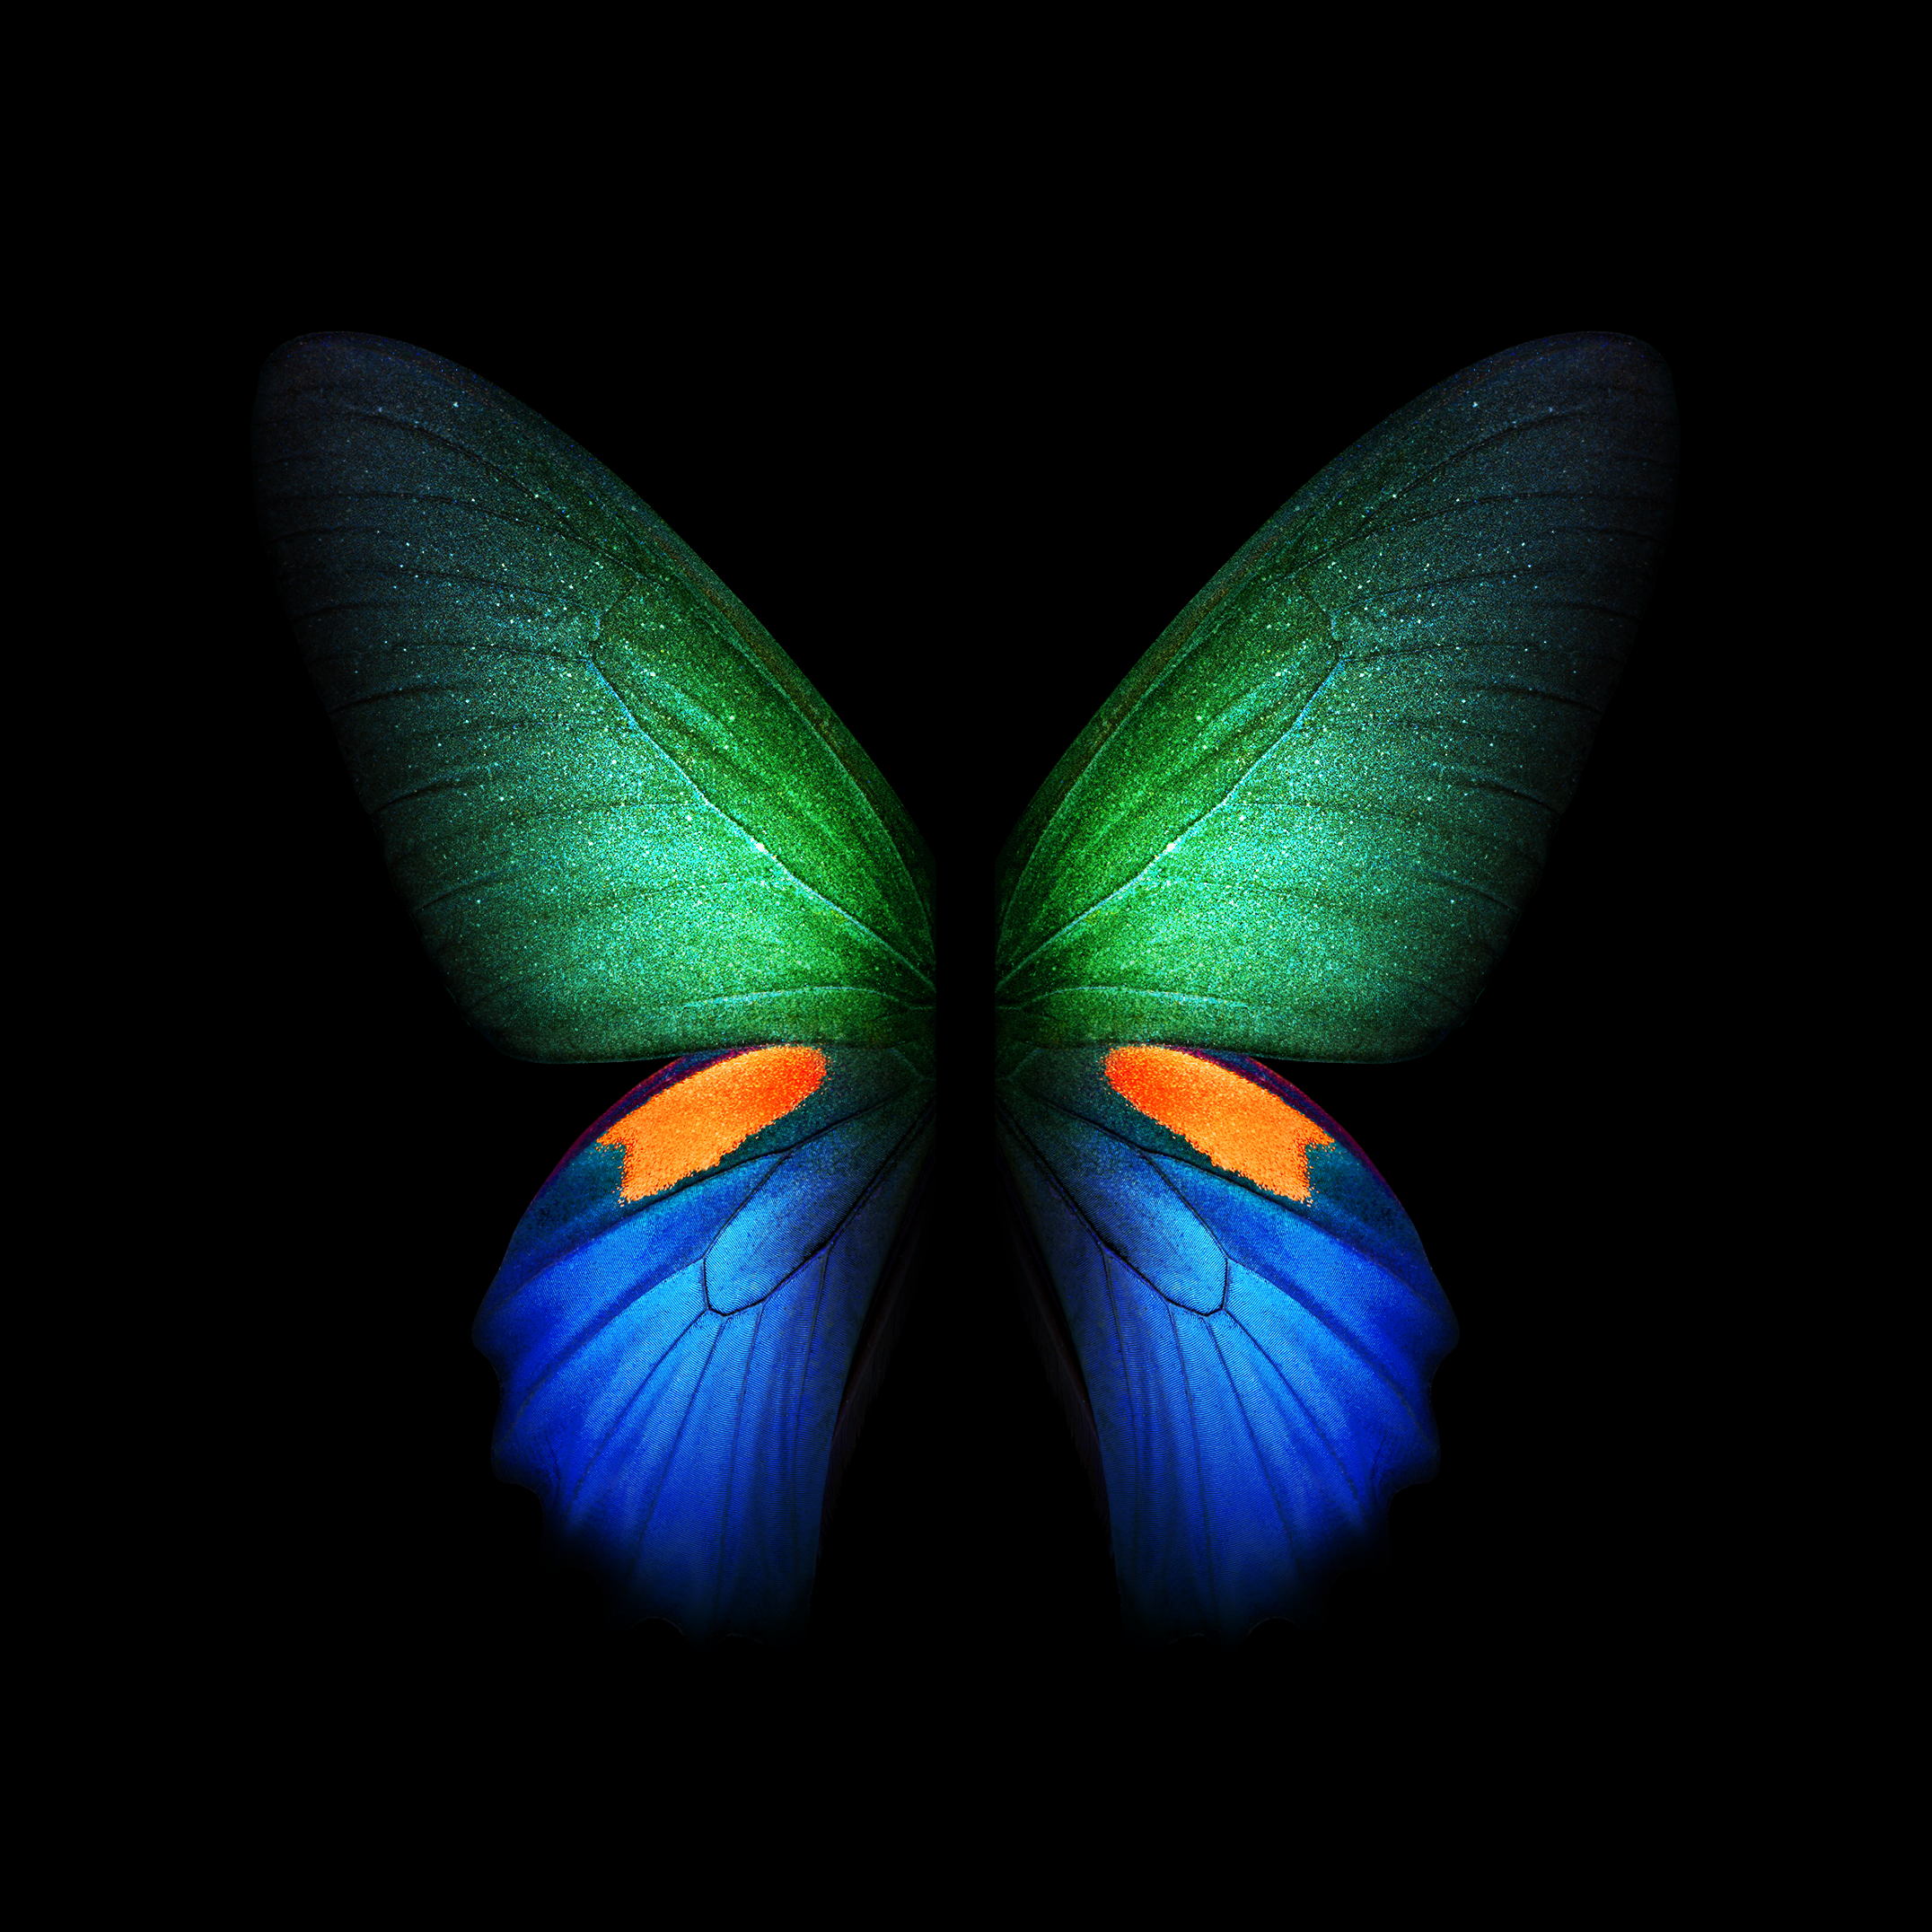 fondos de pantalla móviles hd para samsung,mariposa,insecto,polillas y mariposas,azul,simetría